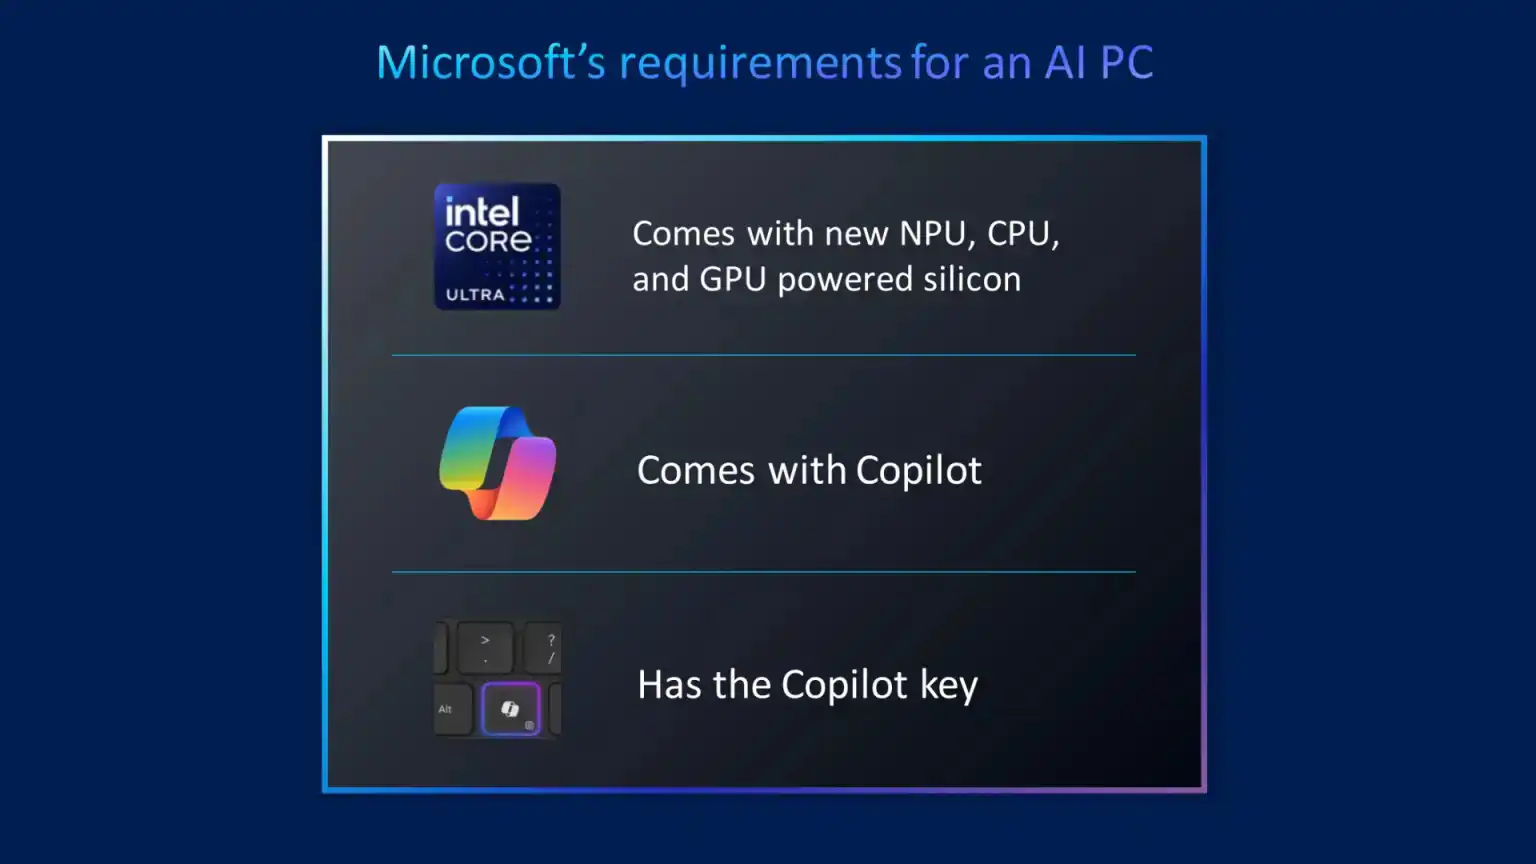 تعریف مایکروسافت از رایانه شخصی هوش مصنوعی: یک پردازنده عصبی و یک برچسب کیبورد